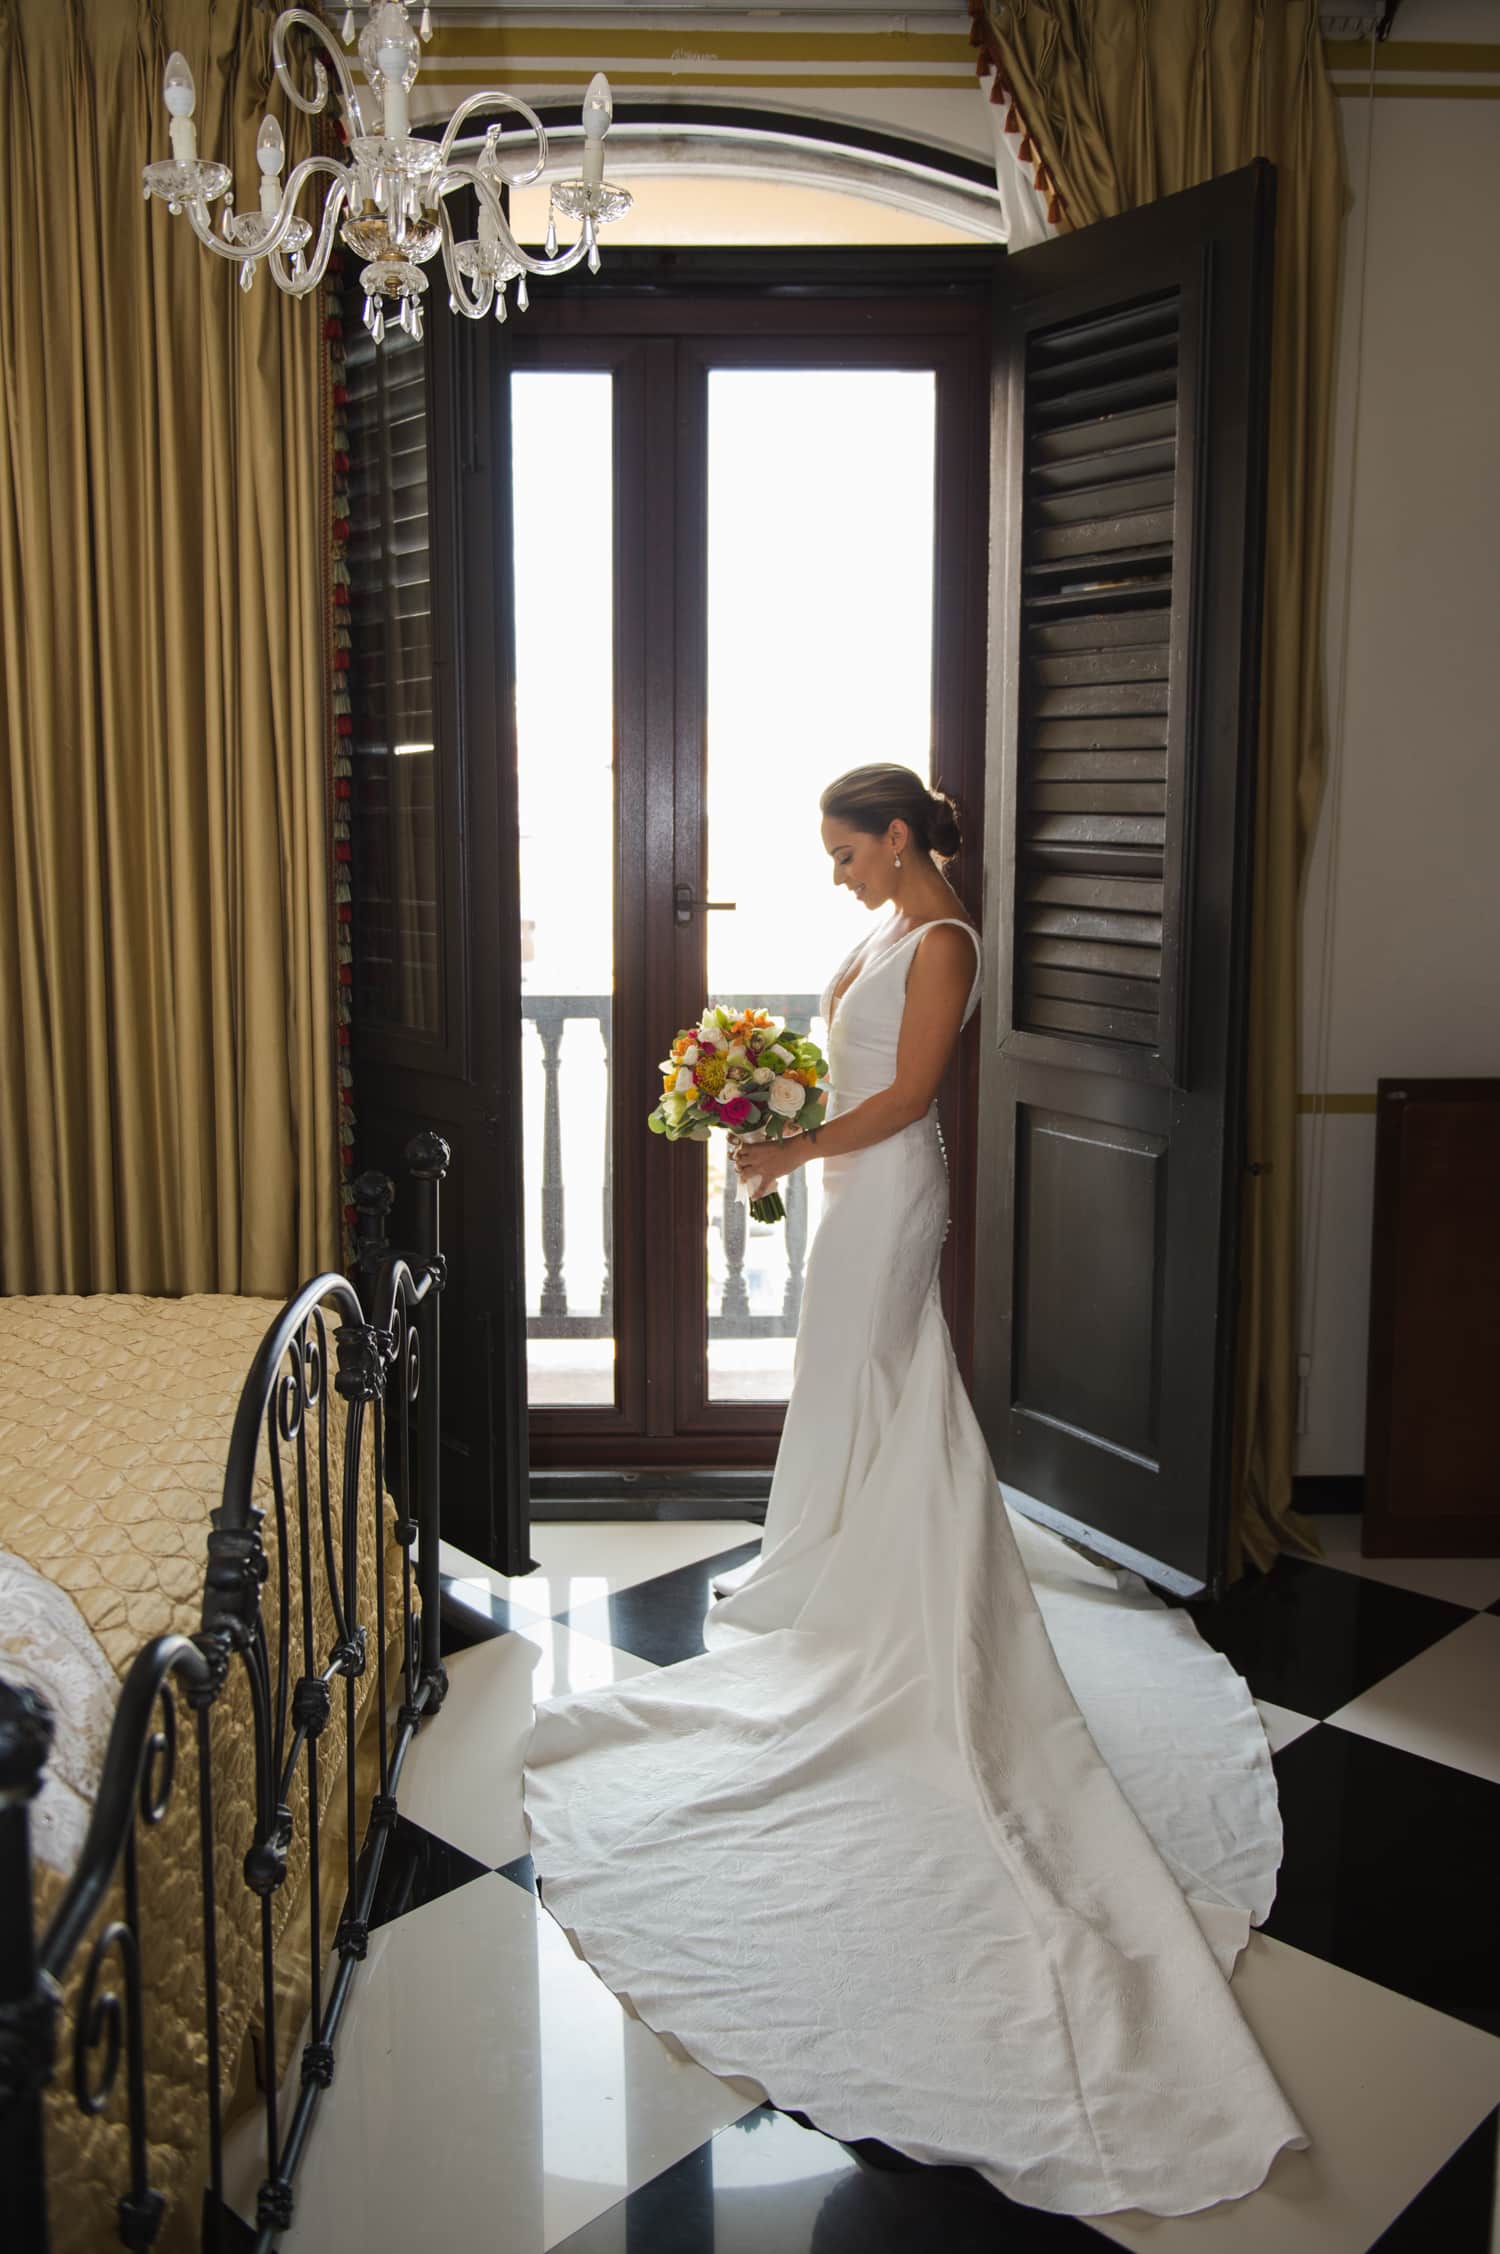 Puerto Rico destination wedding photography at Hotel el Convento, Old San Juan